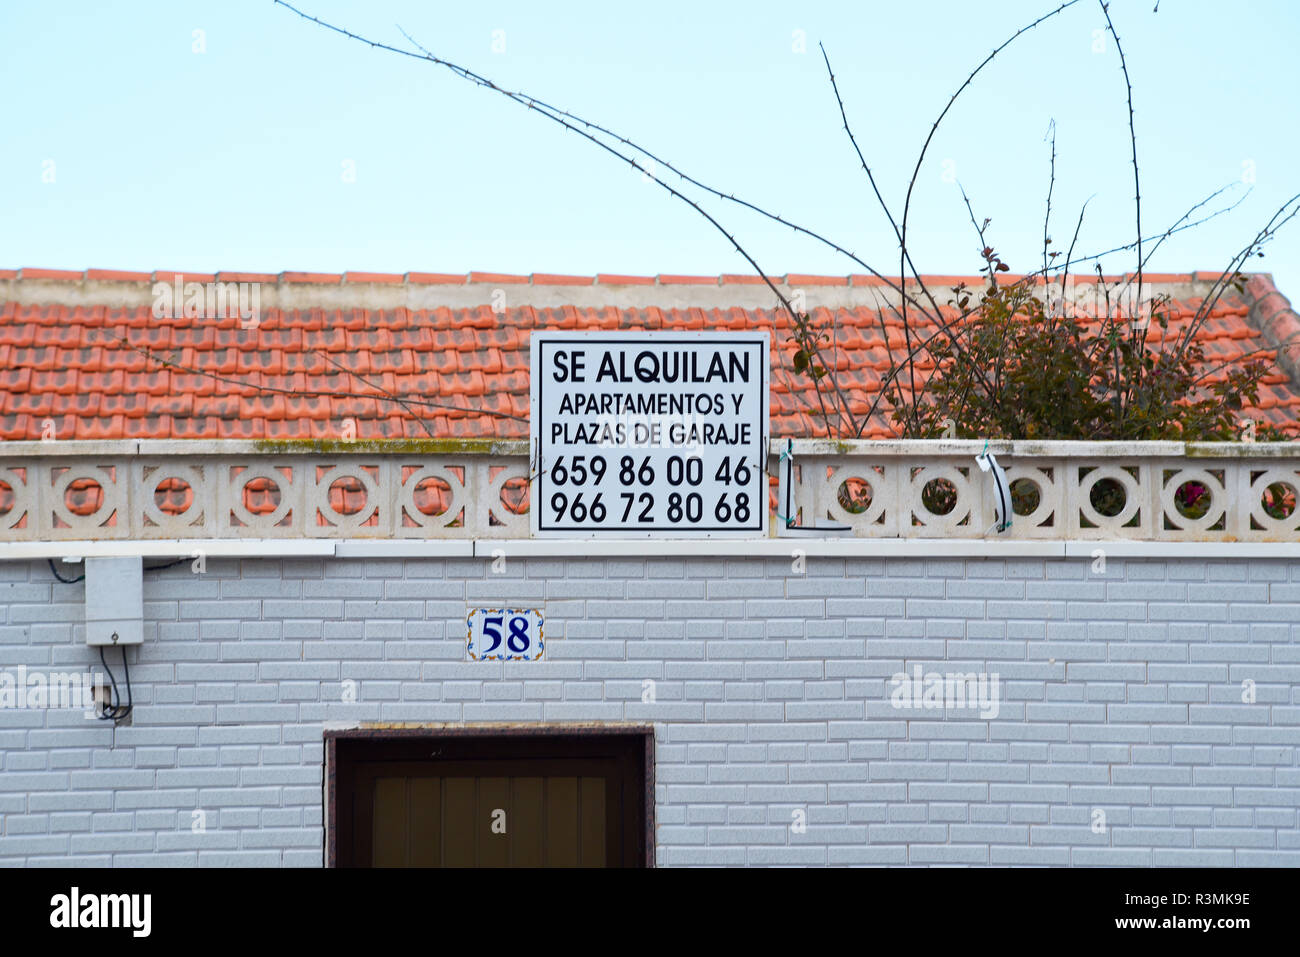 Se Alquilan, pour louer, l''Apartamentos y Plazas de places, des appartements avec parking souterrain à Guardamar del Segura, Costa Blanca, Espagne Banque D'Images